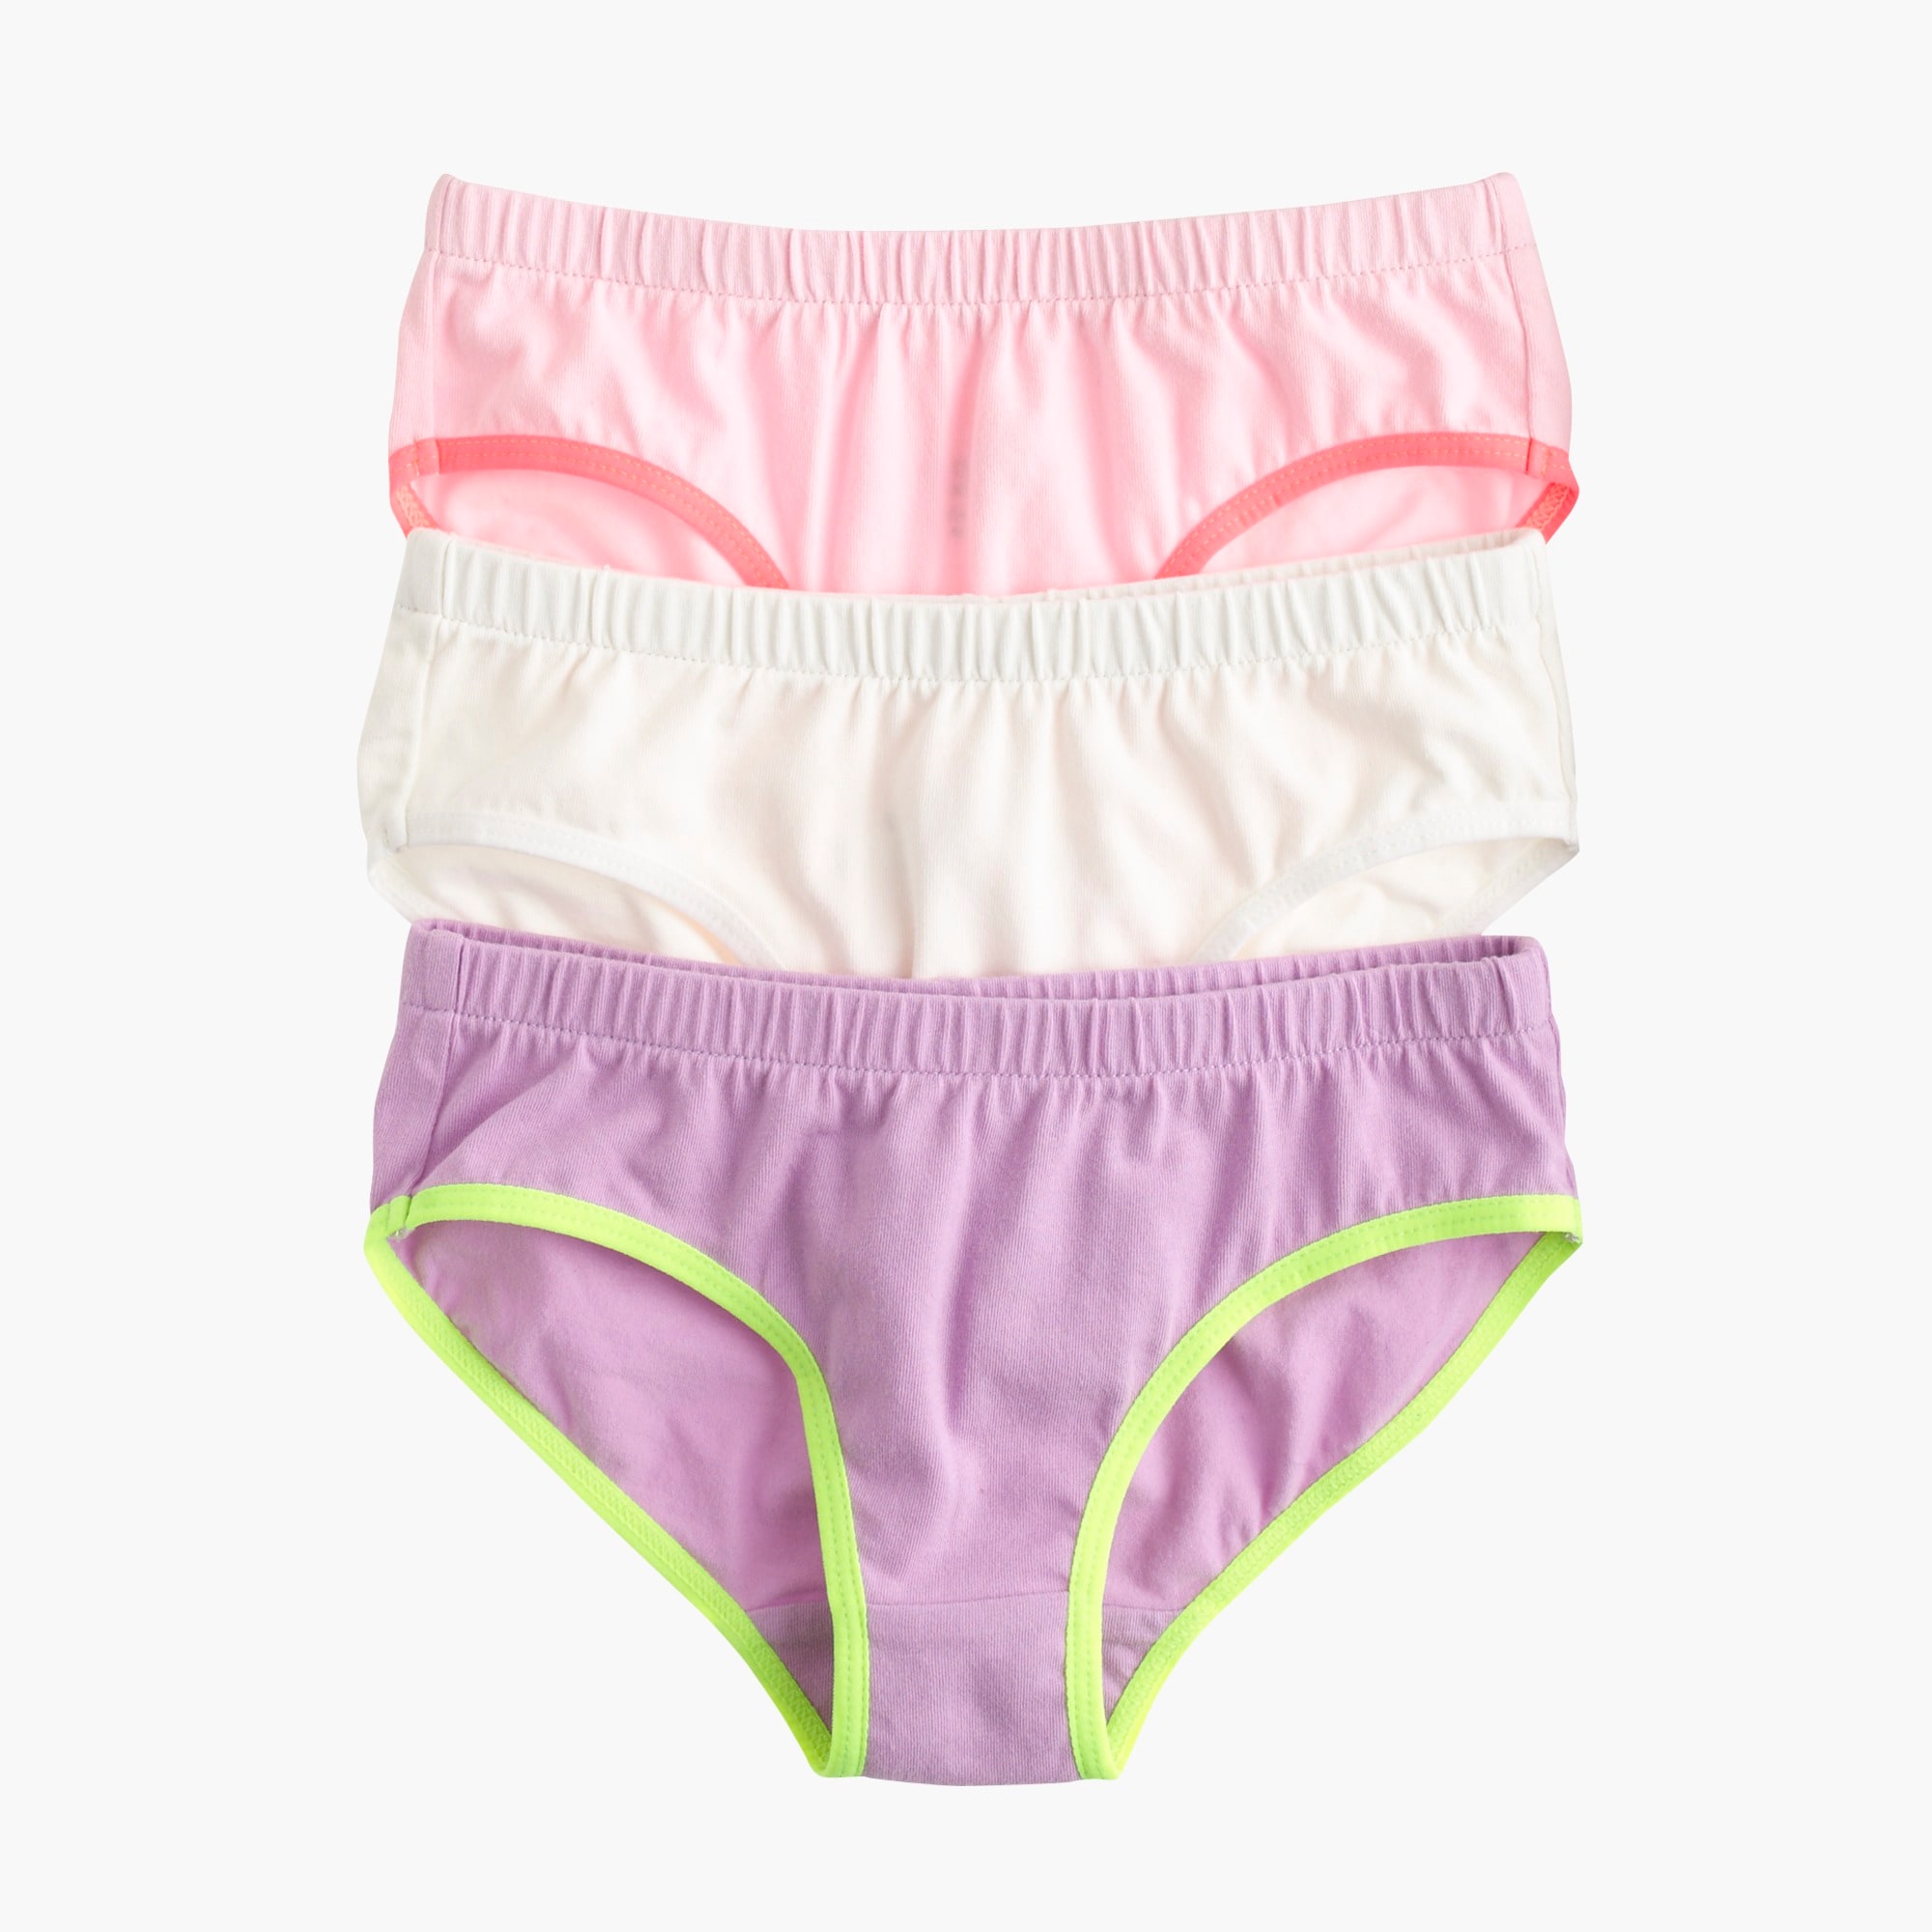 Girls' underwear three-pack in solid